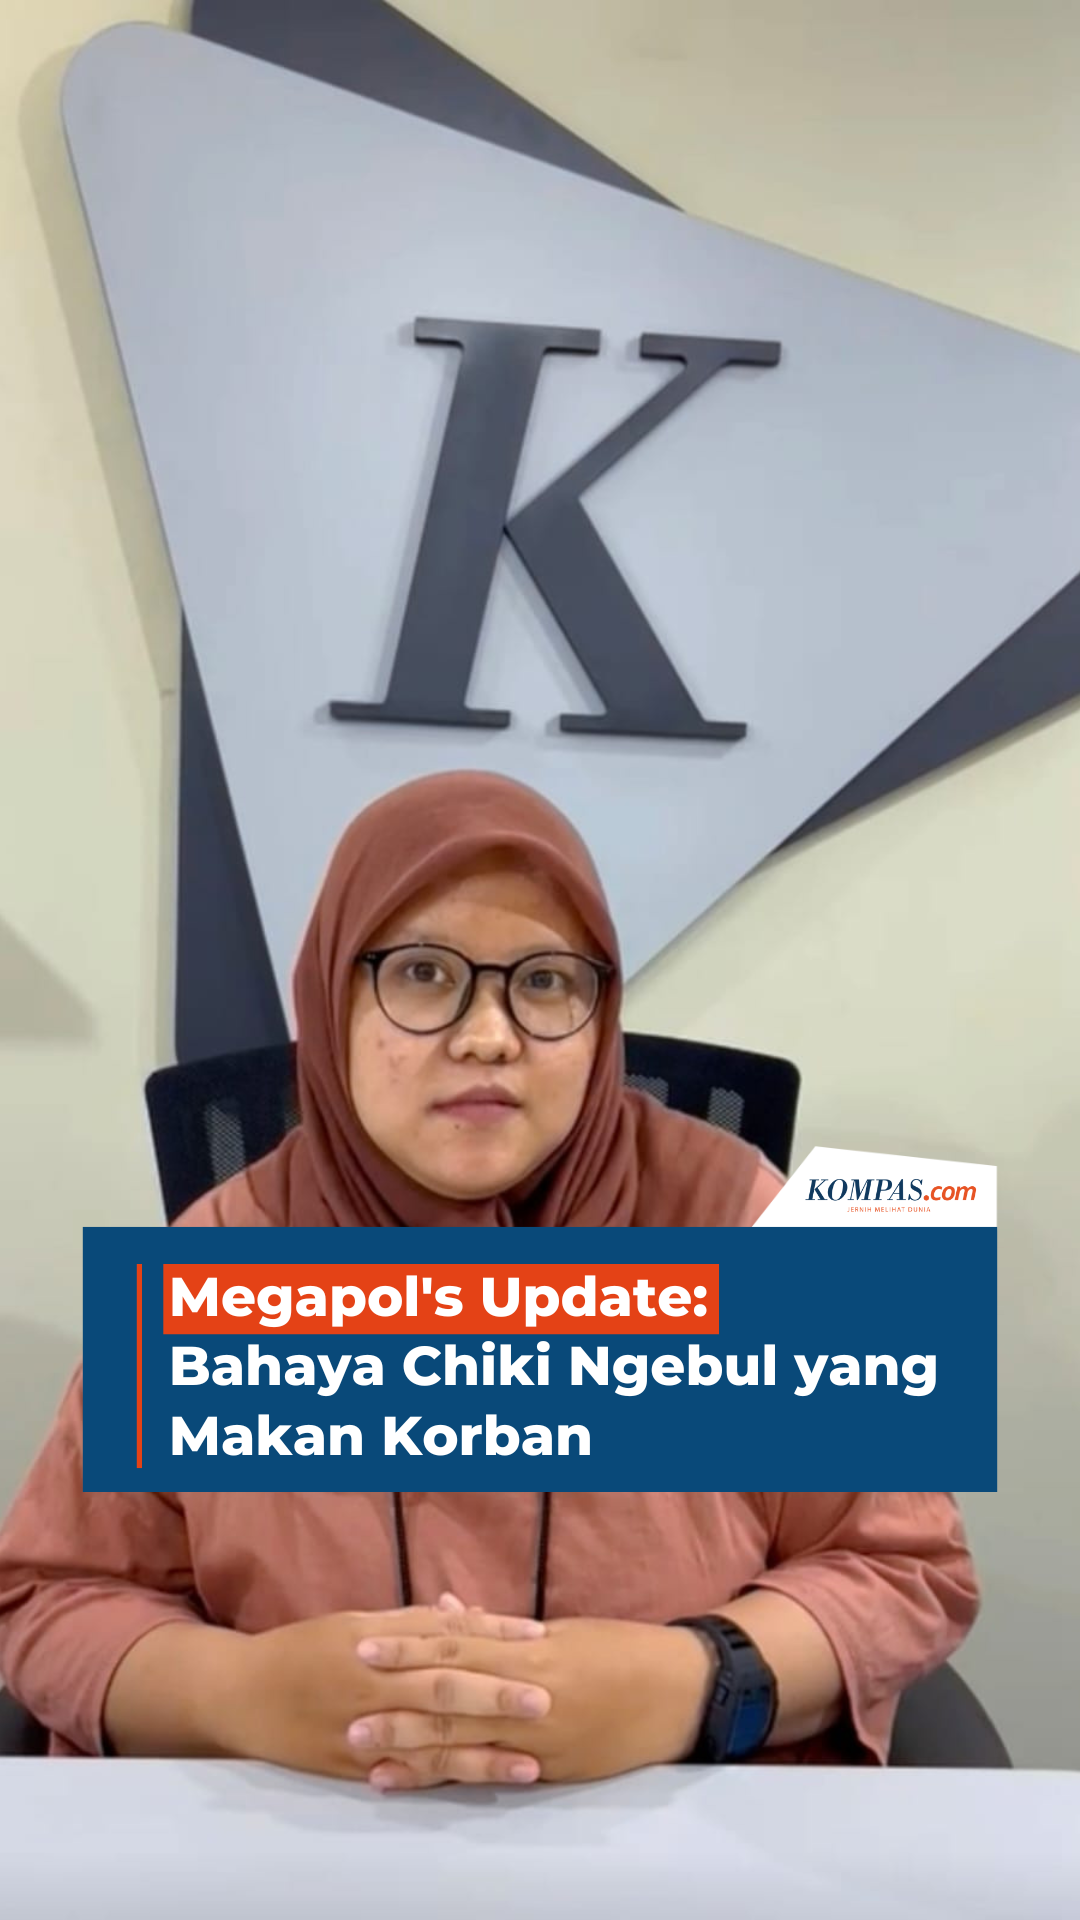 Megapol's Update: Bahaya Chiki Ngebul yang Makan Korban